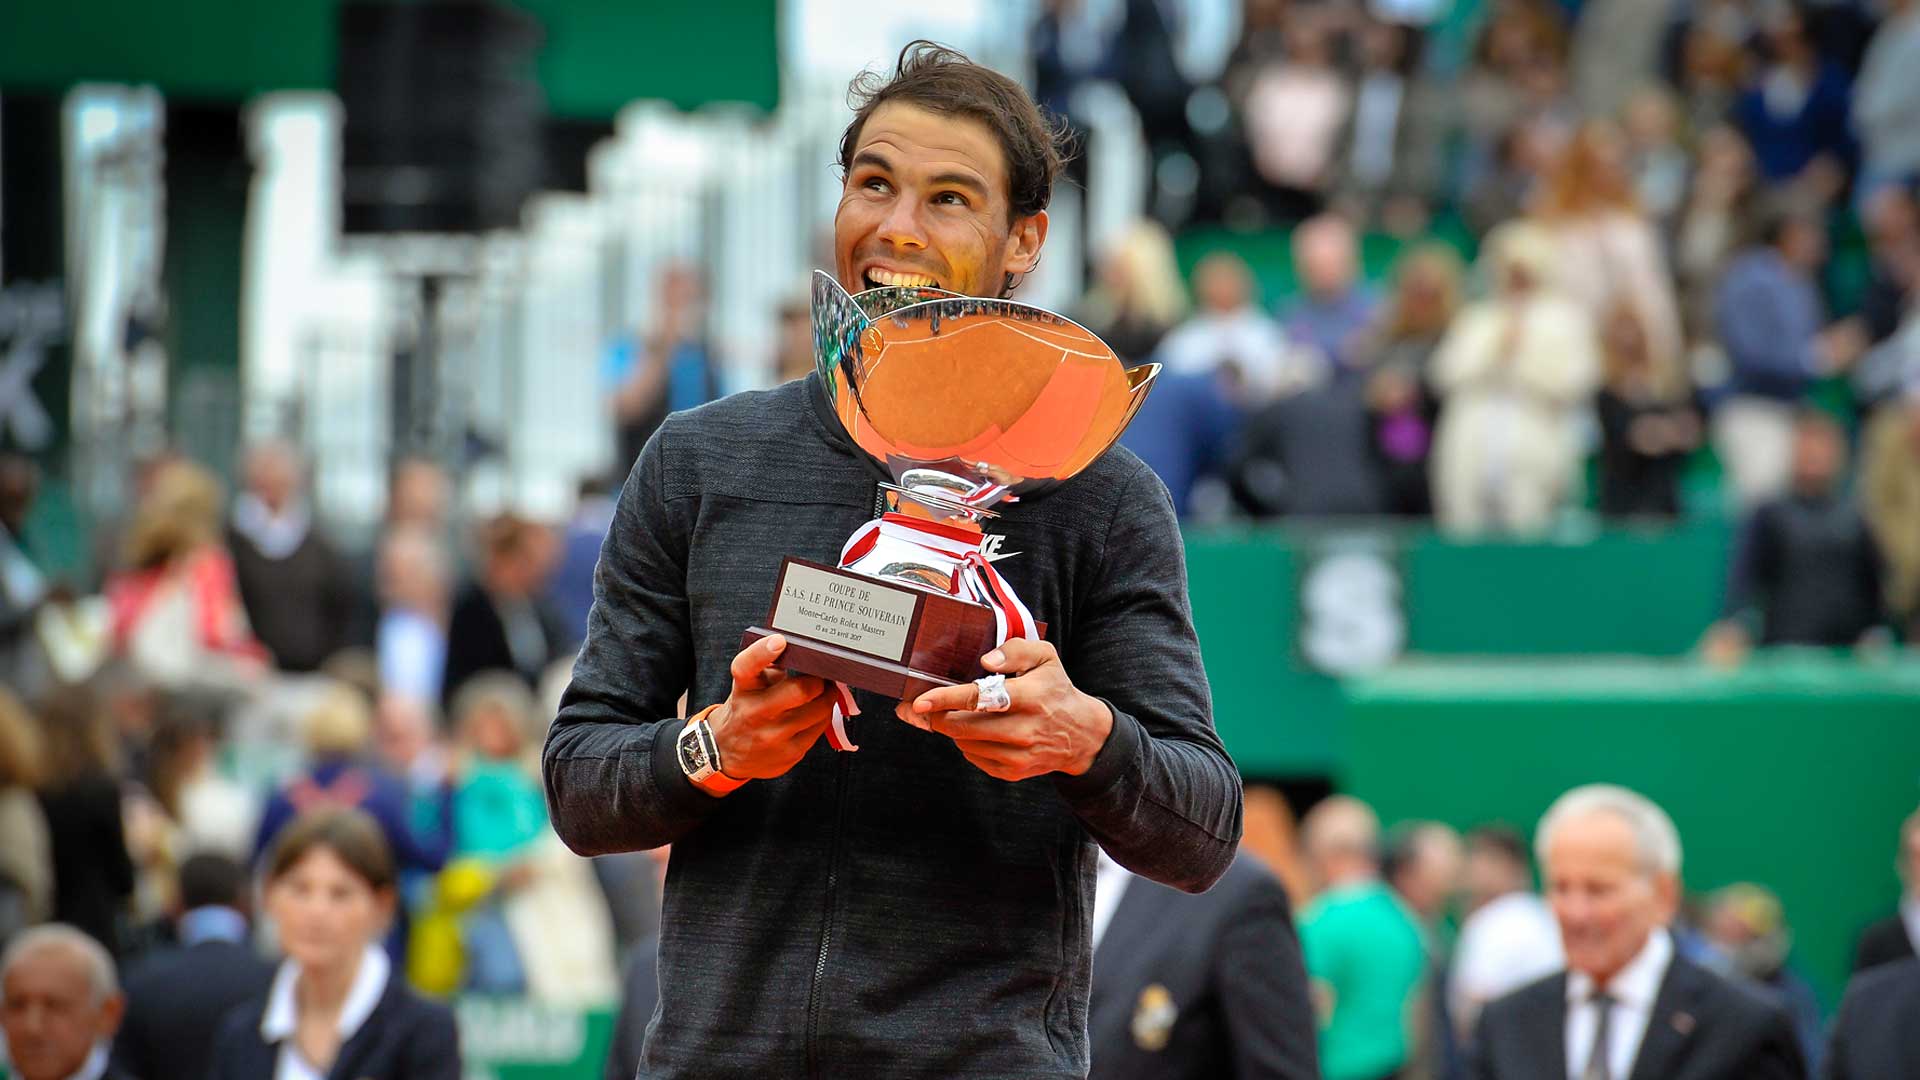 Nessuno in Era Open ha vinto dieci volte lo stesso torneo, tranne Nadal.